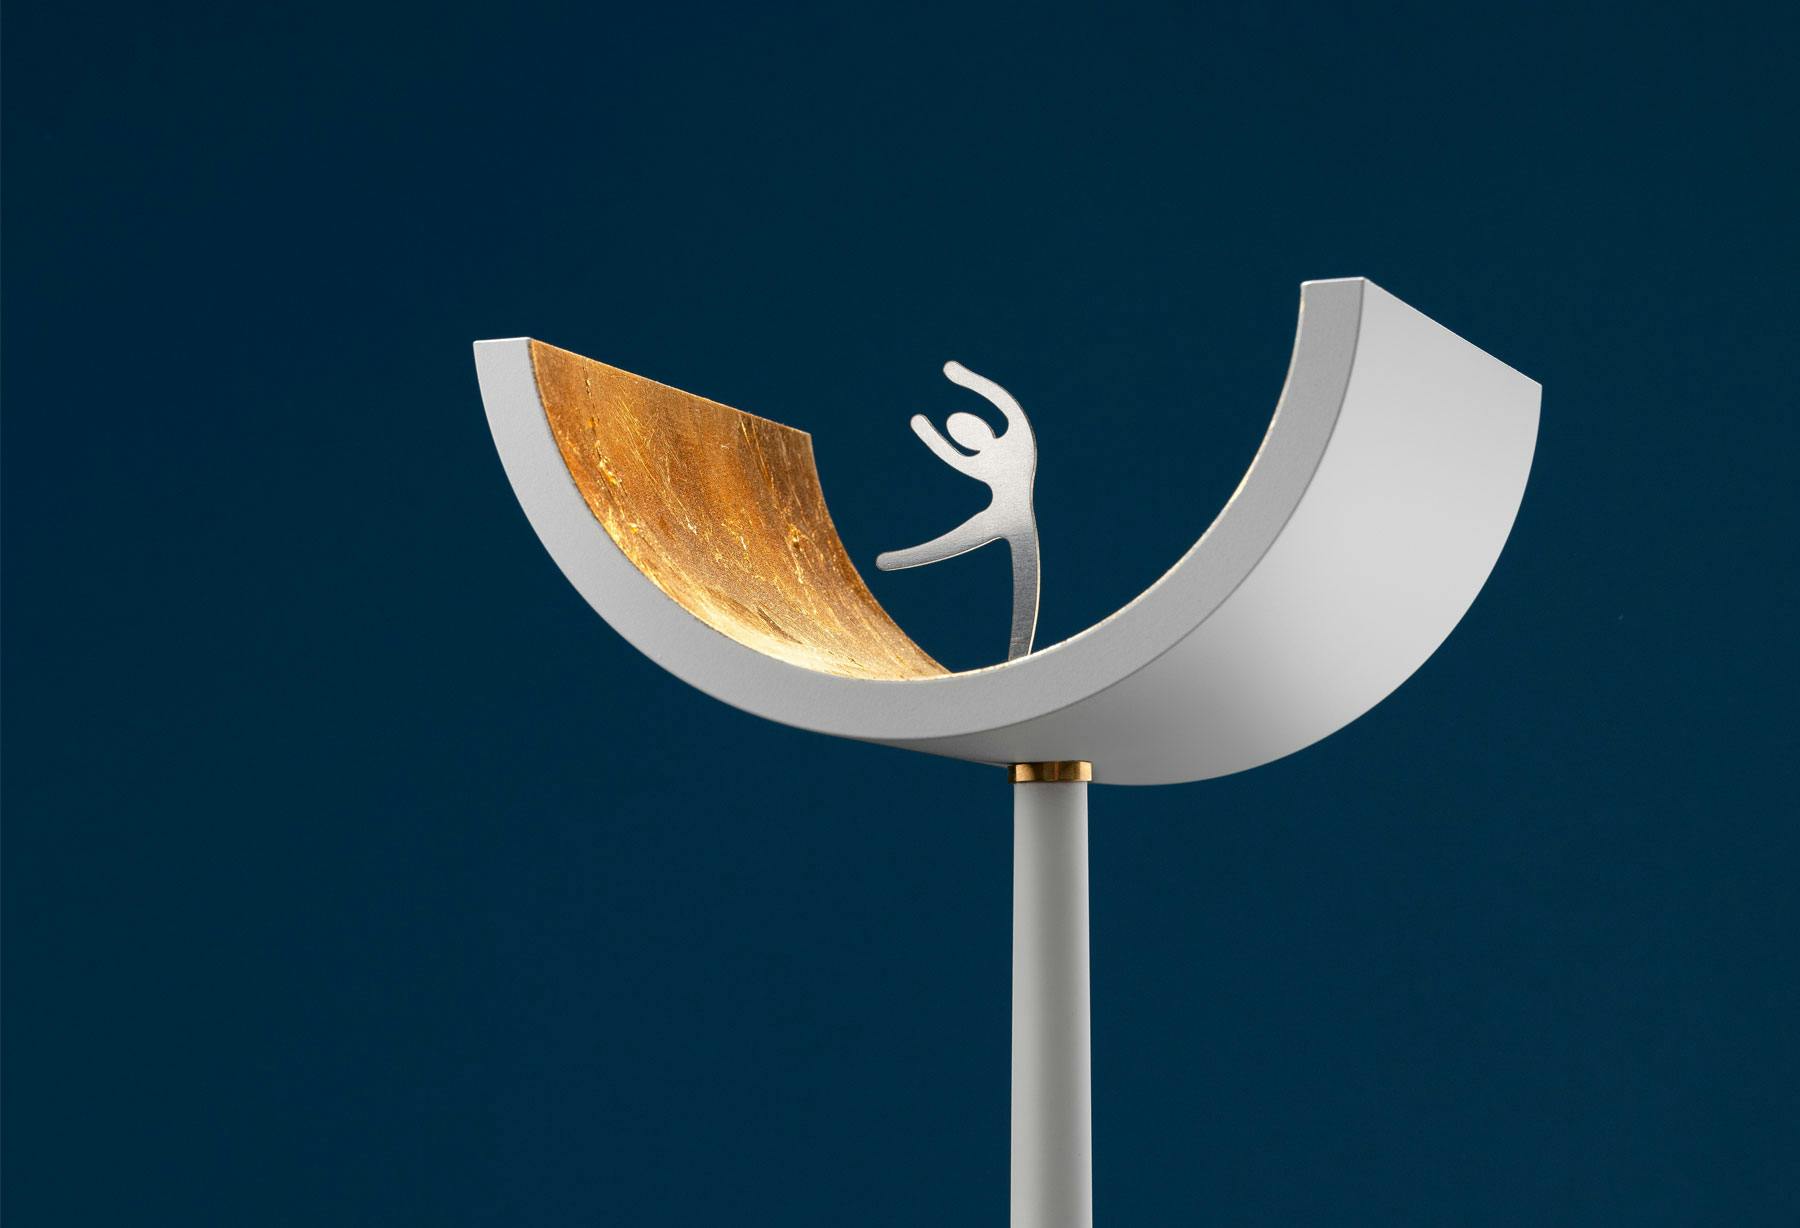 <p>La lámpara «U» es seleccionada para uno de los premios internacionales con mayor reconocimiento a la excelencia en el diseño y se expone en Atenas con motivo de la exposición «The Annual Good Design Show 2021».</p>
